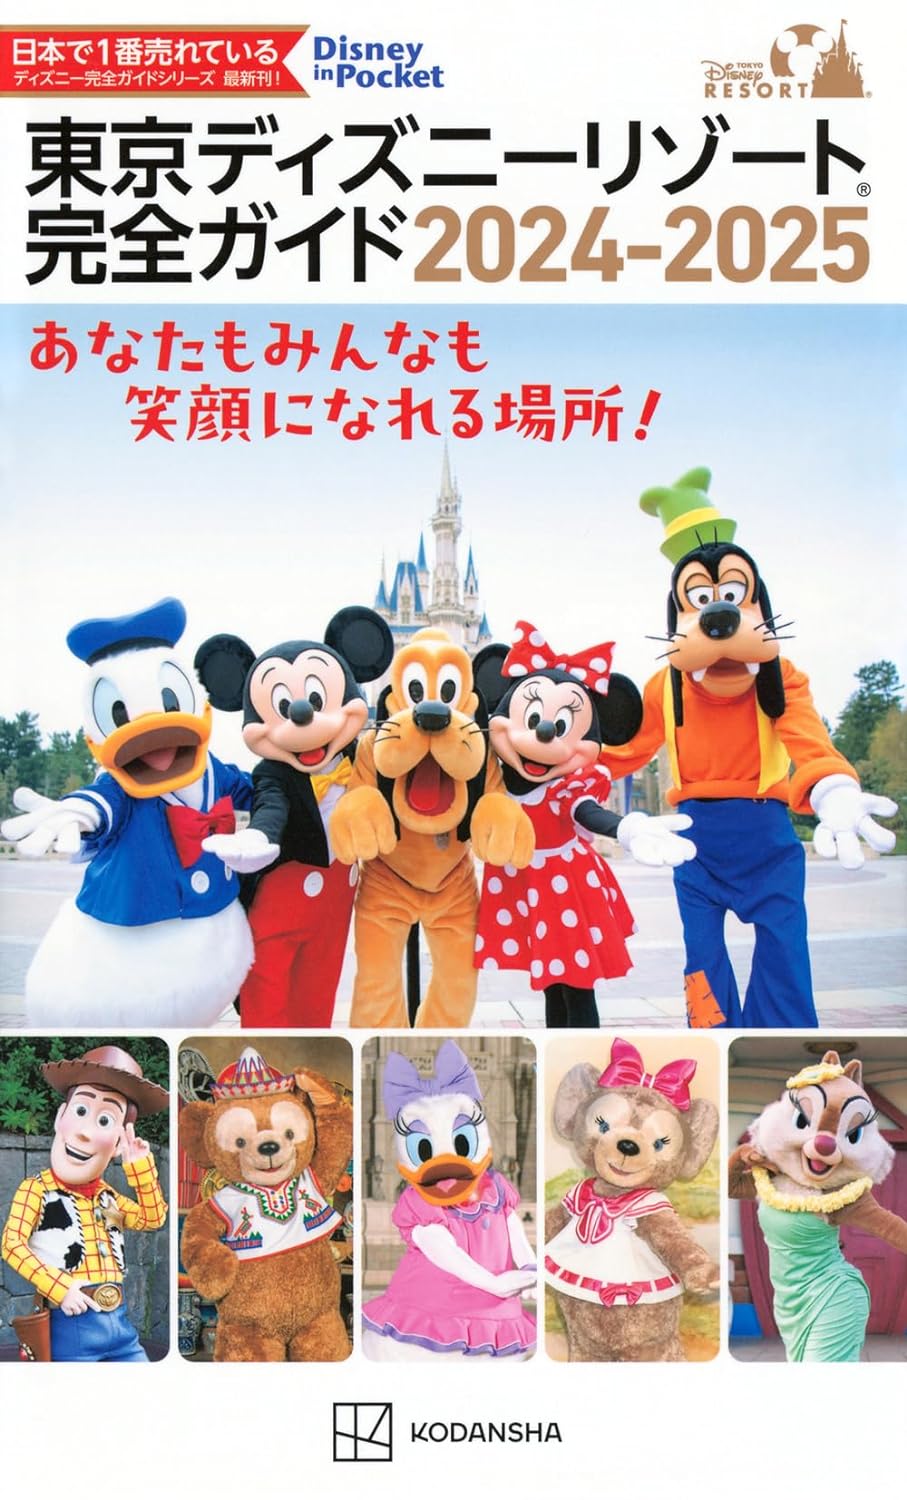 Tokyo Disney Resort Perfect Guide 2024-2025